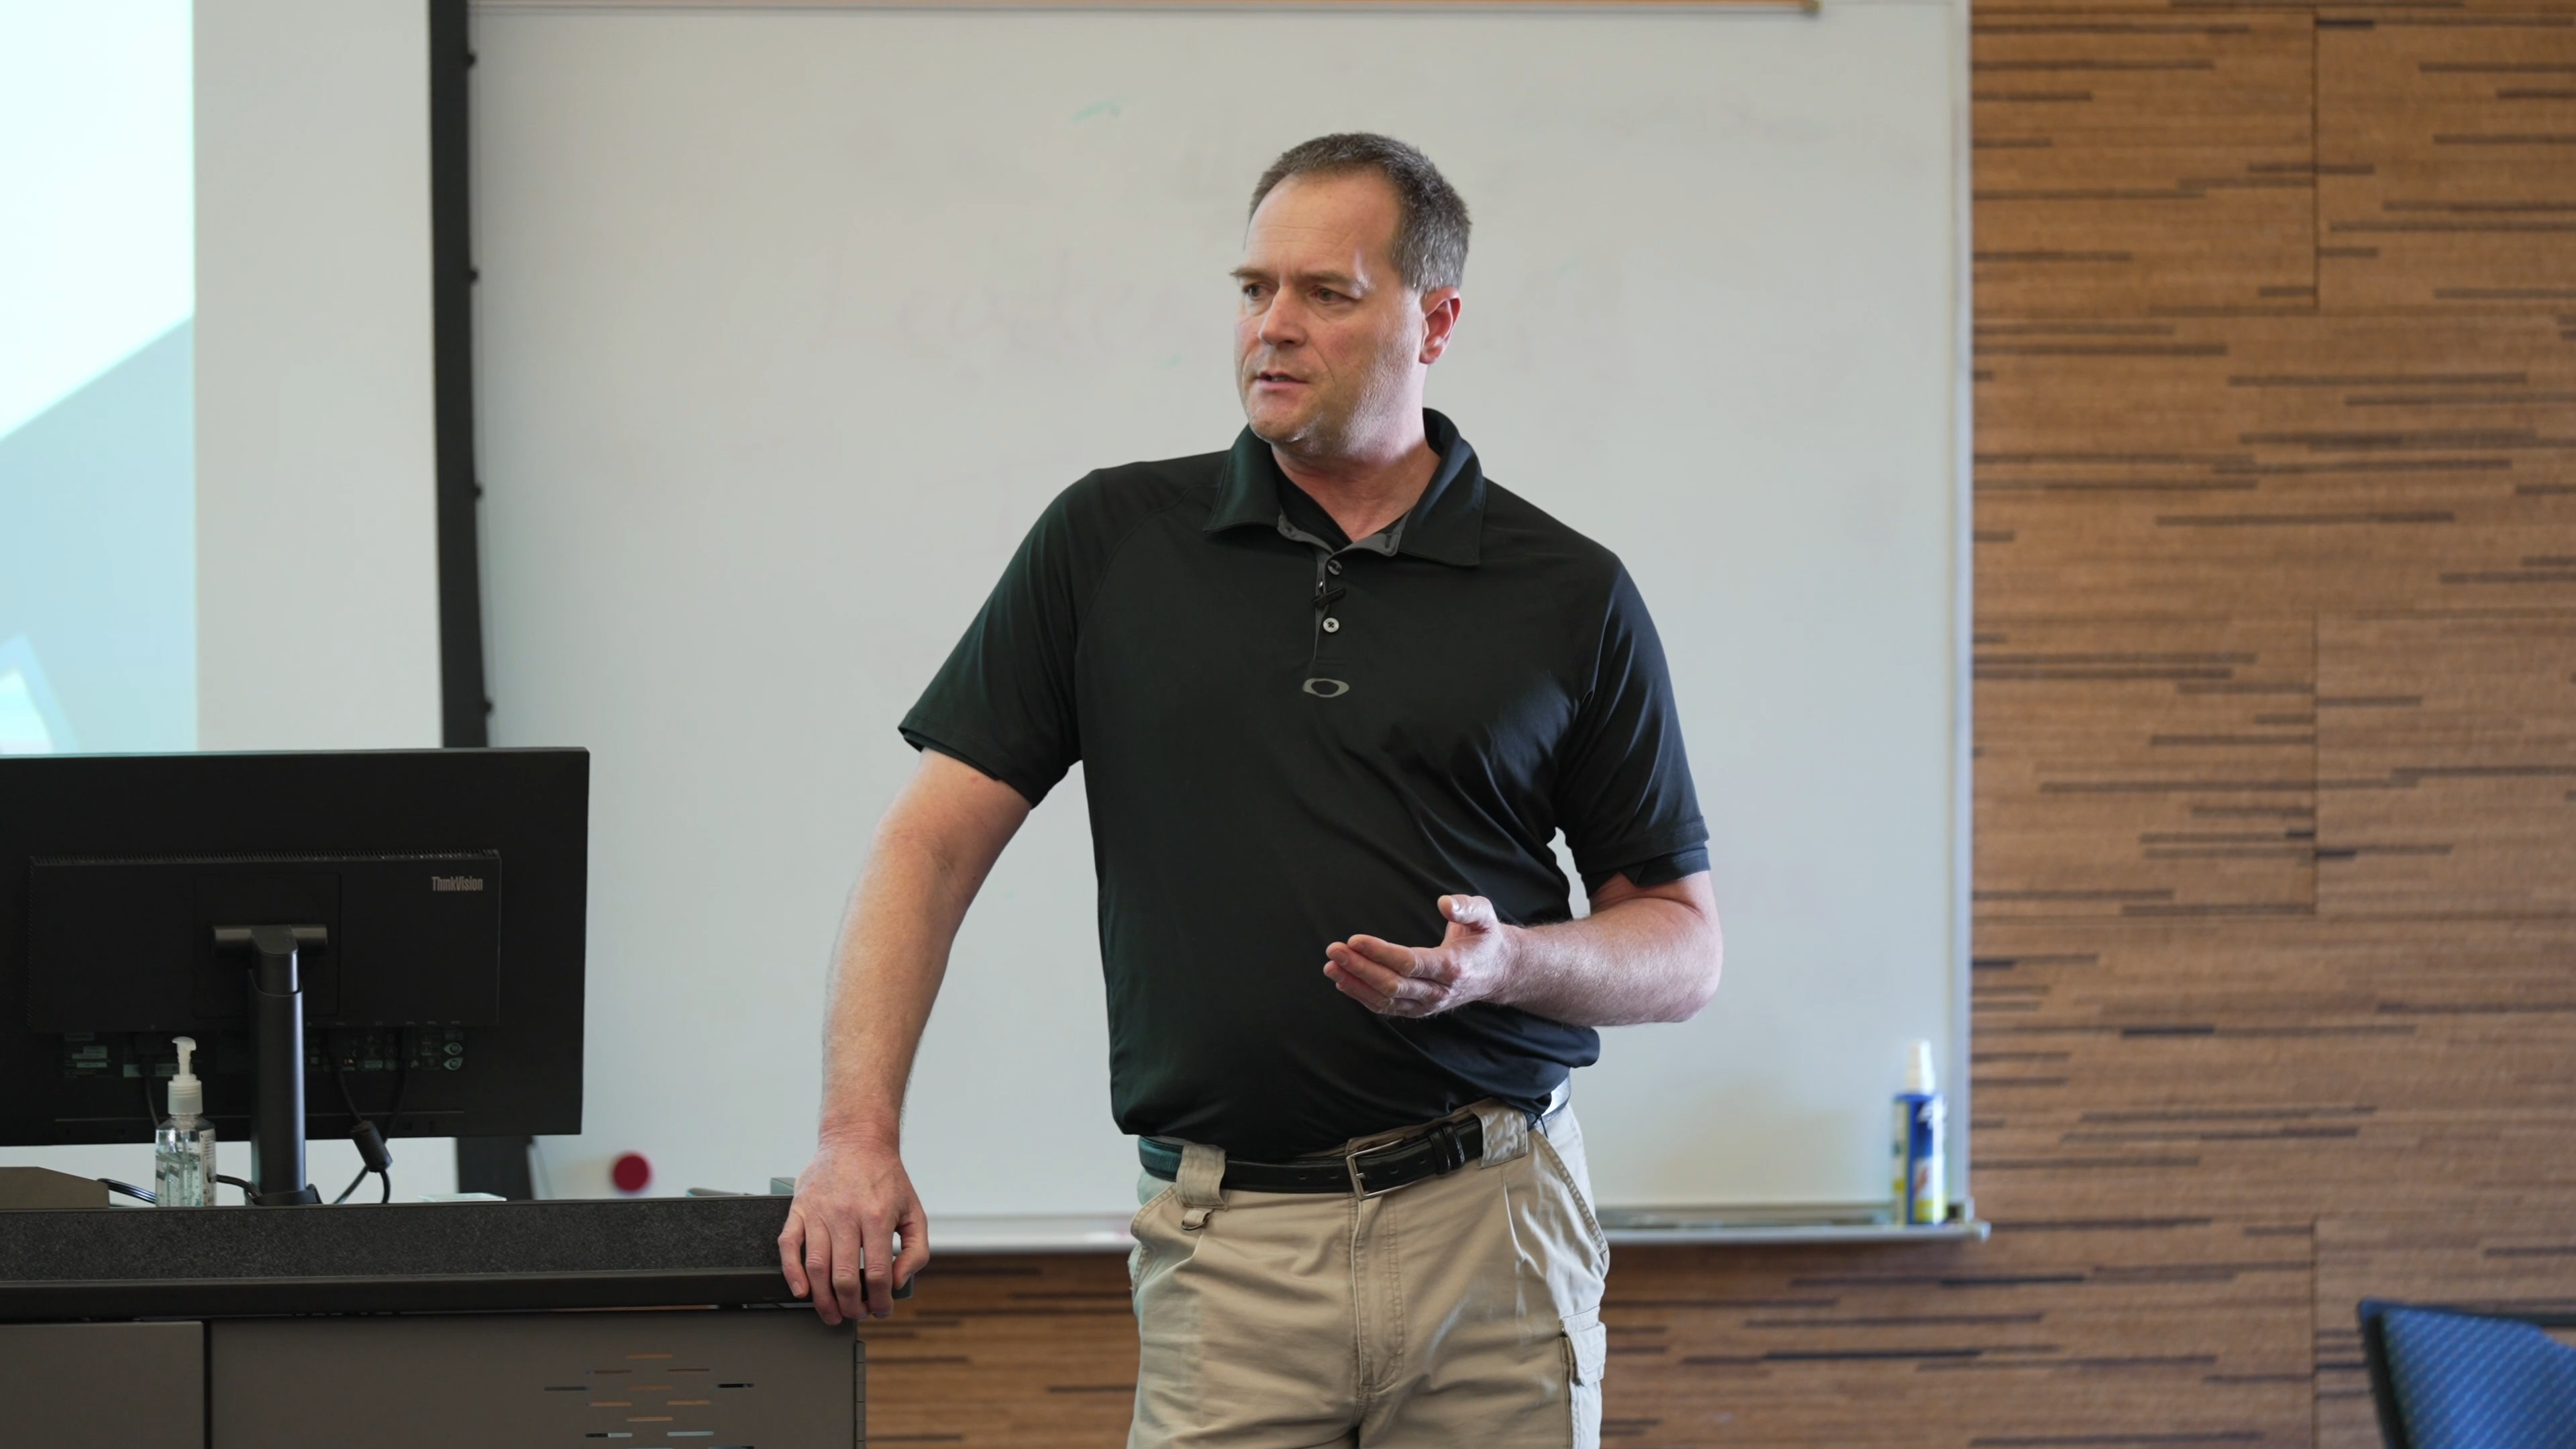 Doug Larsen presents at SAFEGUARD Recruiting's "Recruiting the Next Generation" seminar.